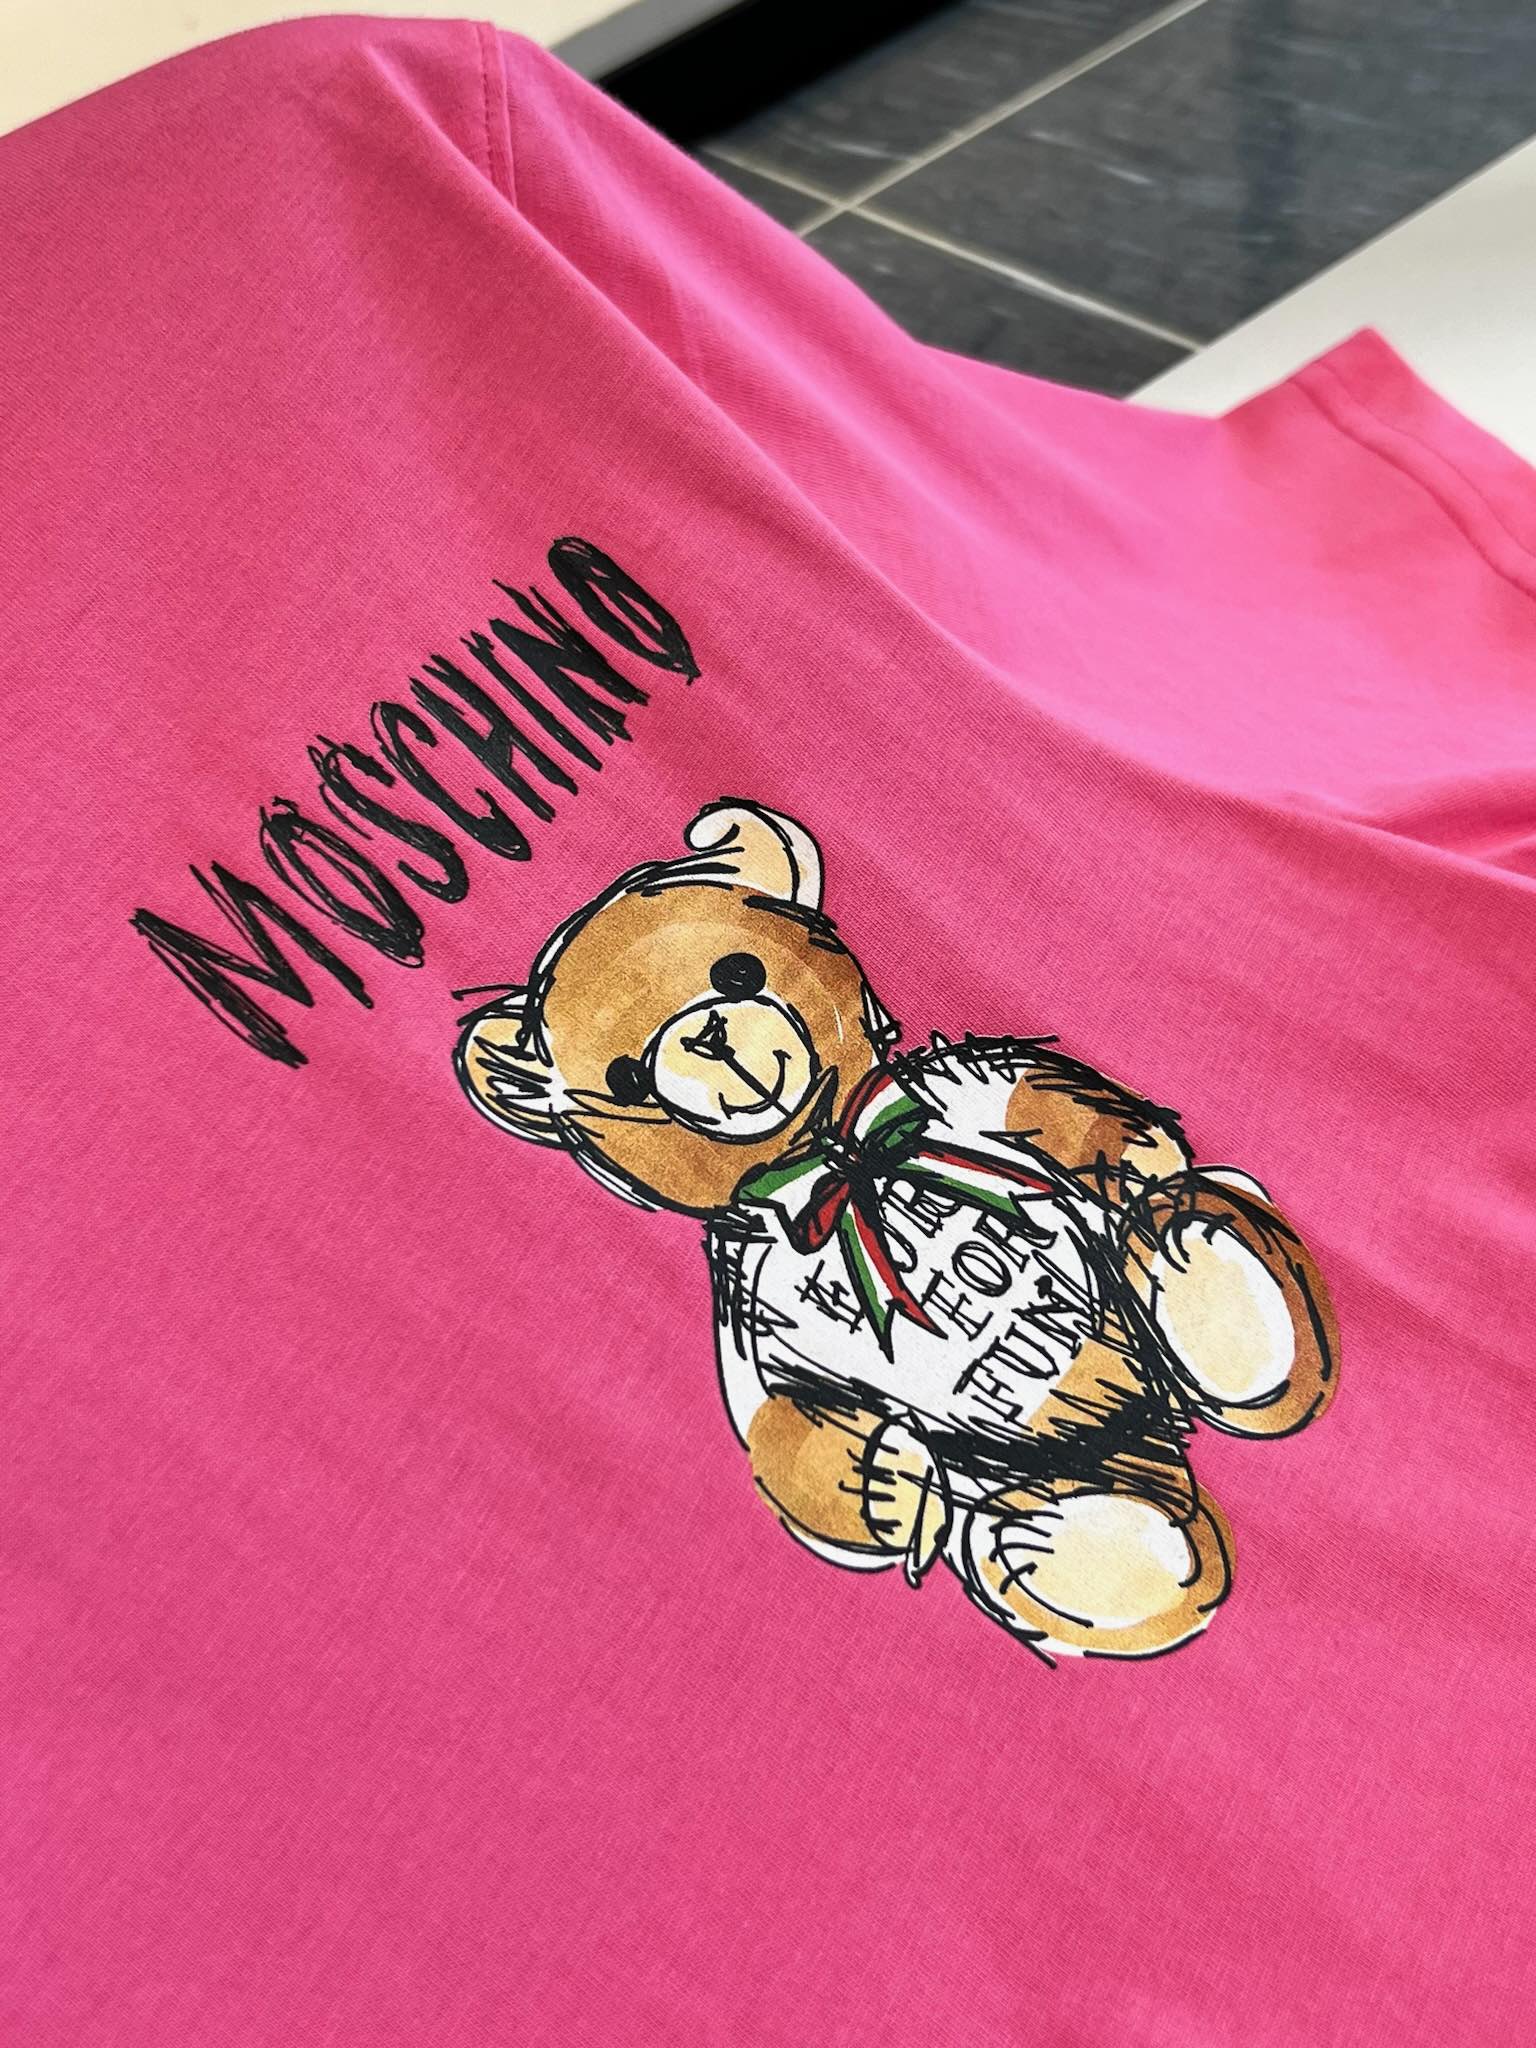 每年春夏少不了的Mos小熊印花T恤！24早春新款G网在售2700！经典却又一直在创新的泰迪小熊总能带给人